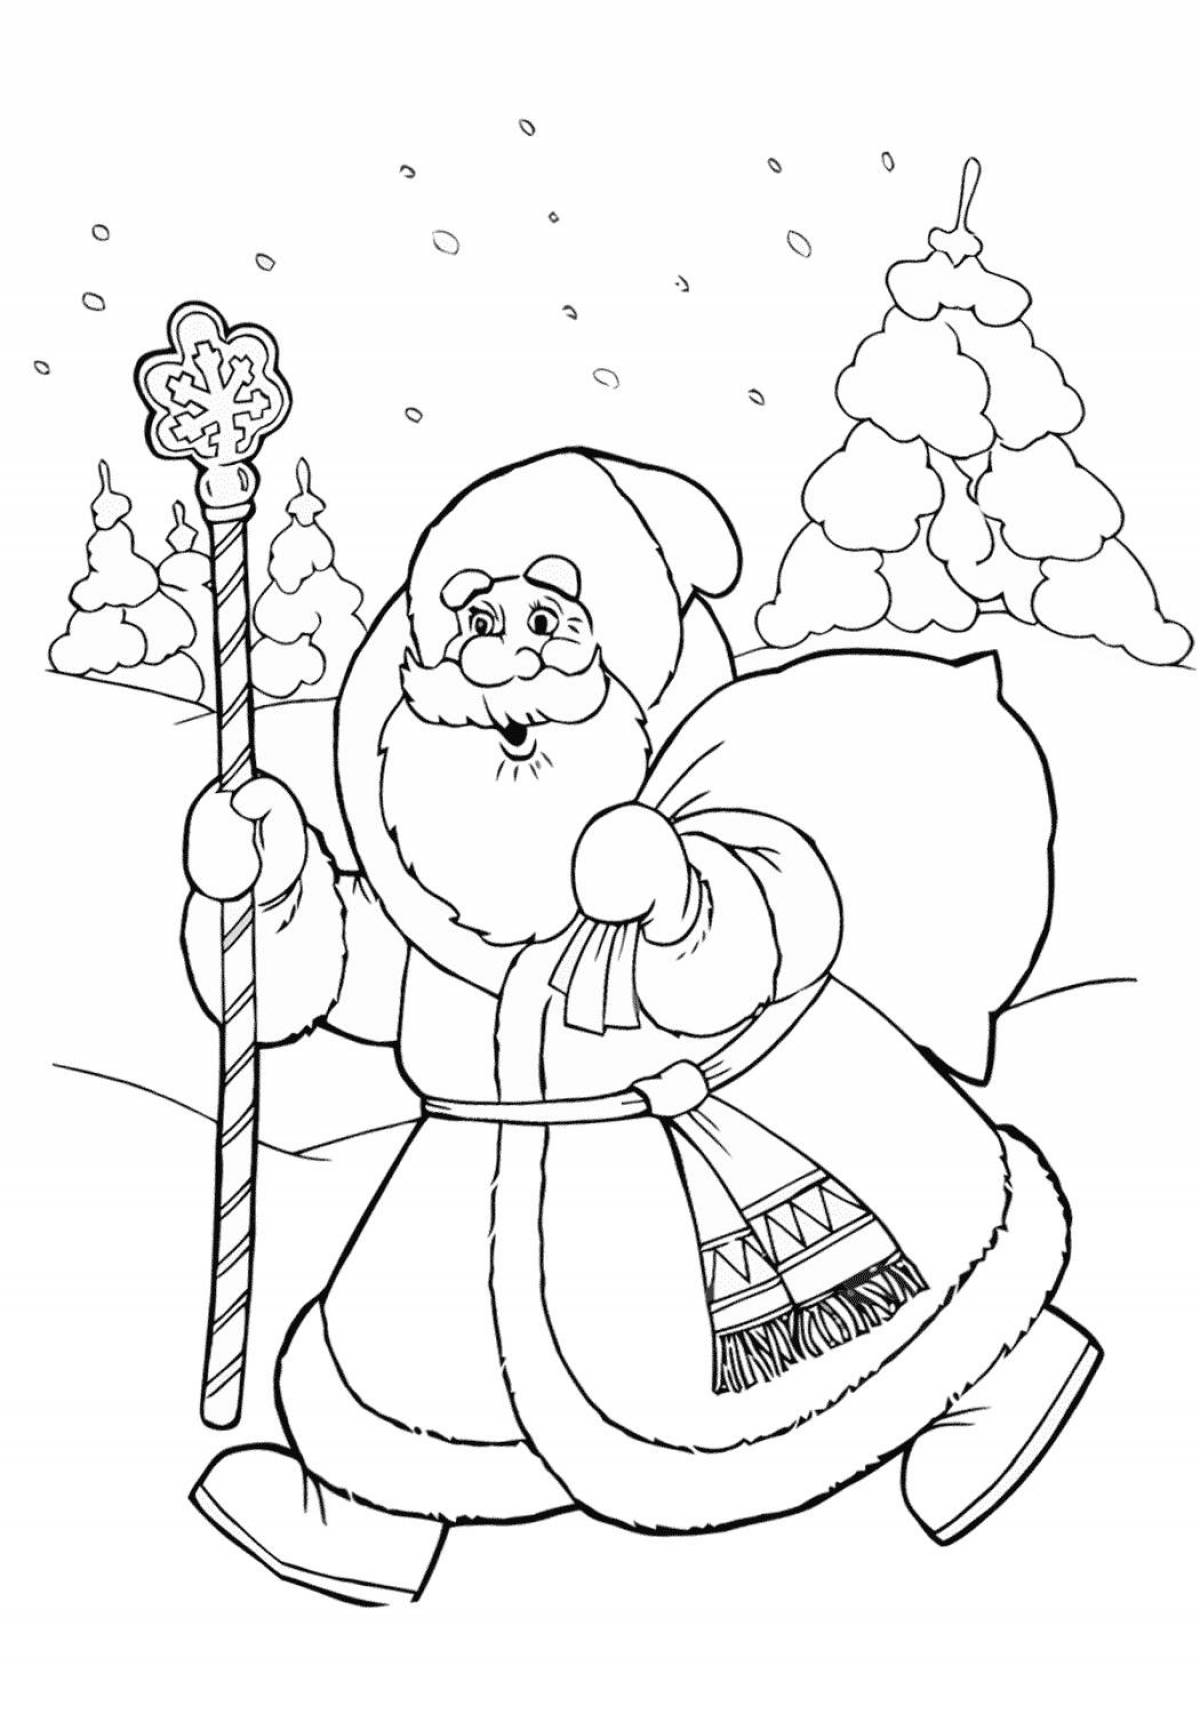 Santa Claus drawing #3